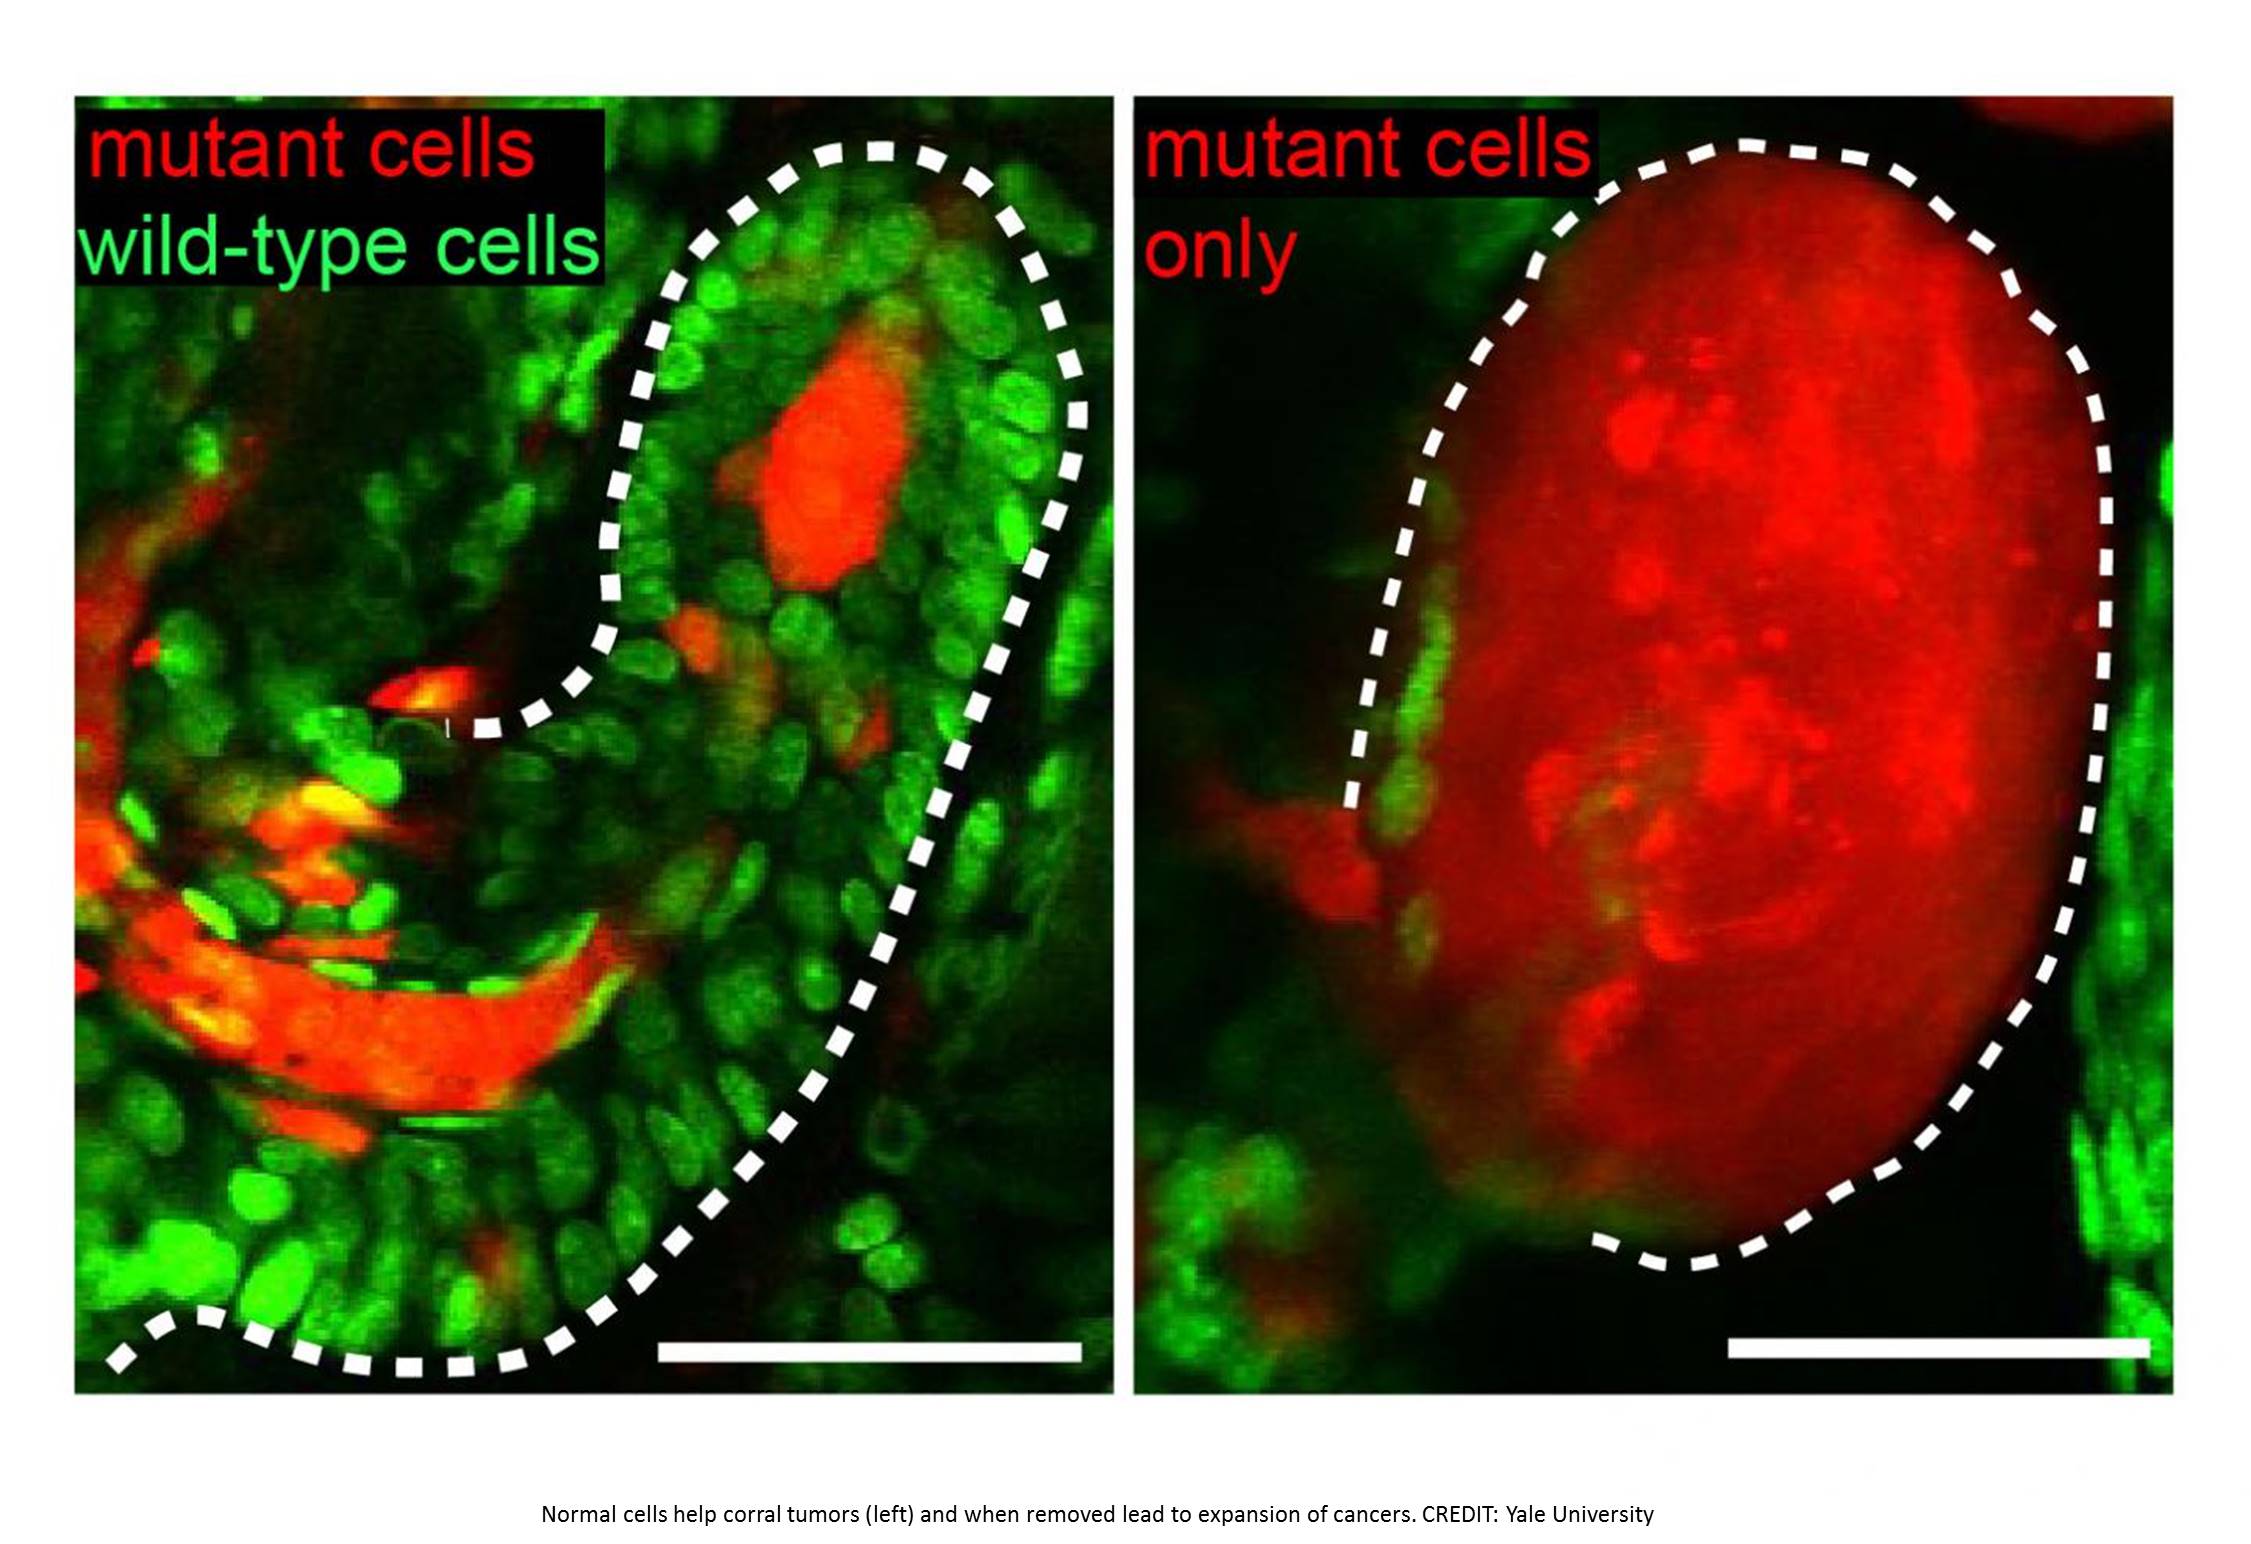 Neighbor cells correct aberrant growth to maintain tissue homeostasis